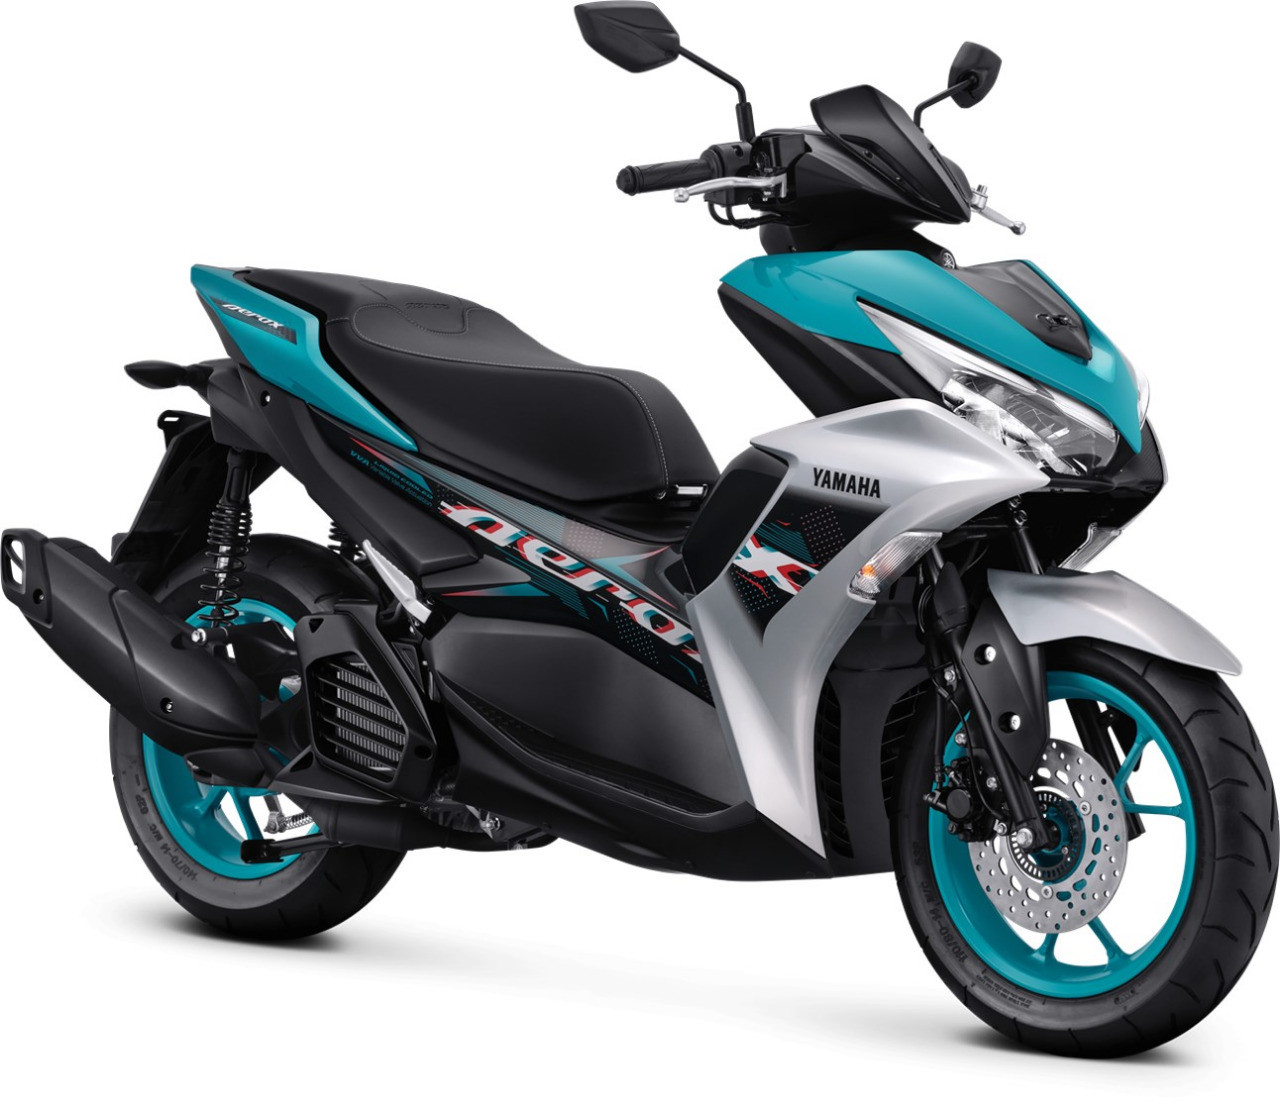 Yamaha All New Aerox 155 Connected Version Tampil Semakin Sporty dengan Warna dan Grafis Baru